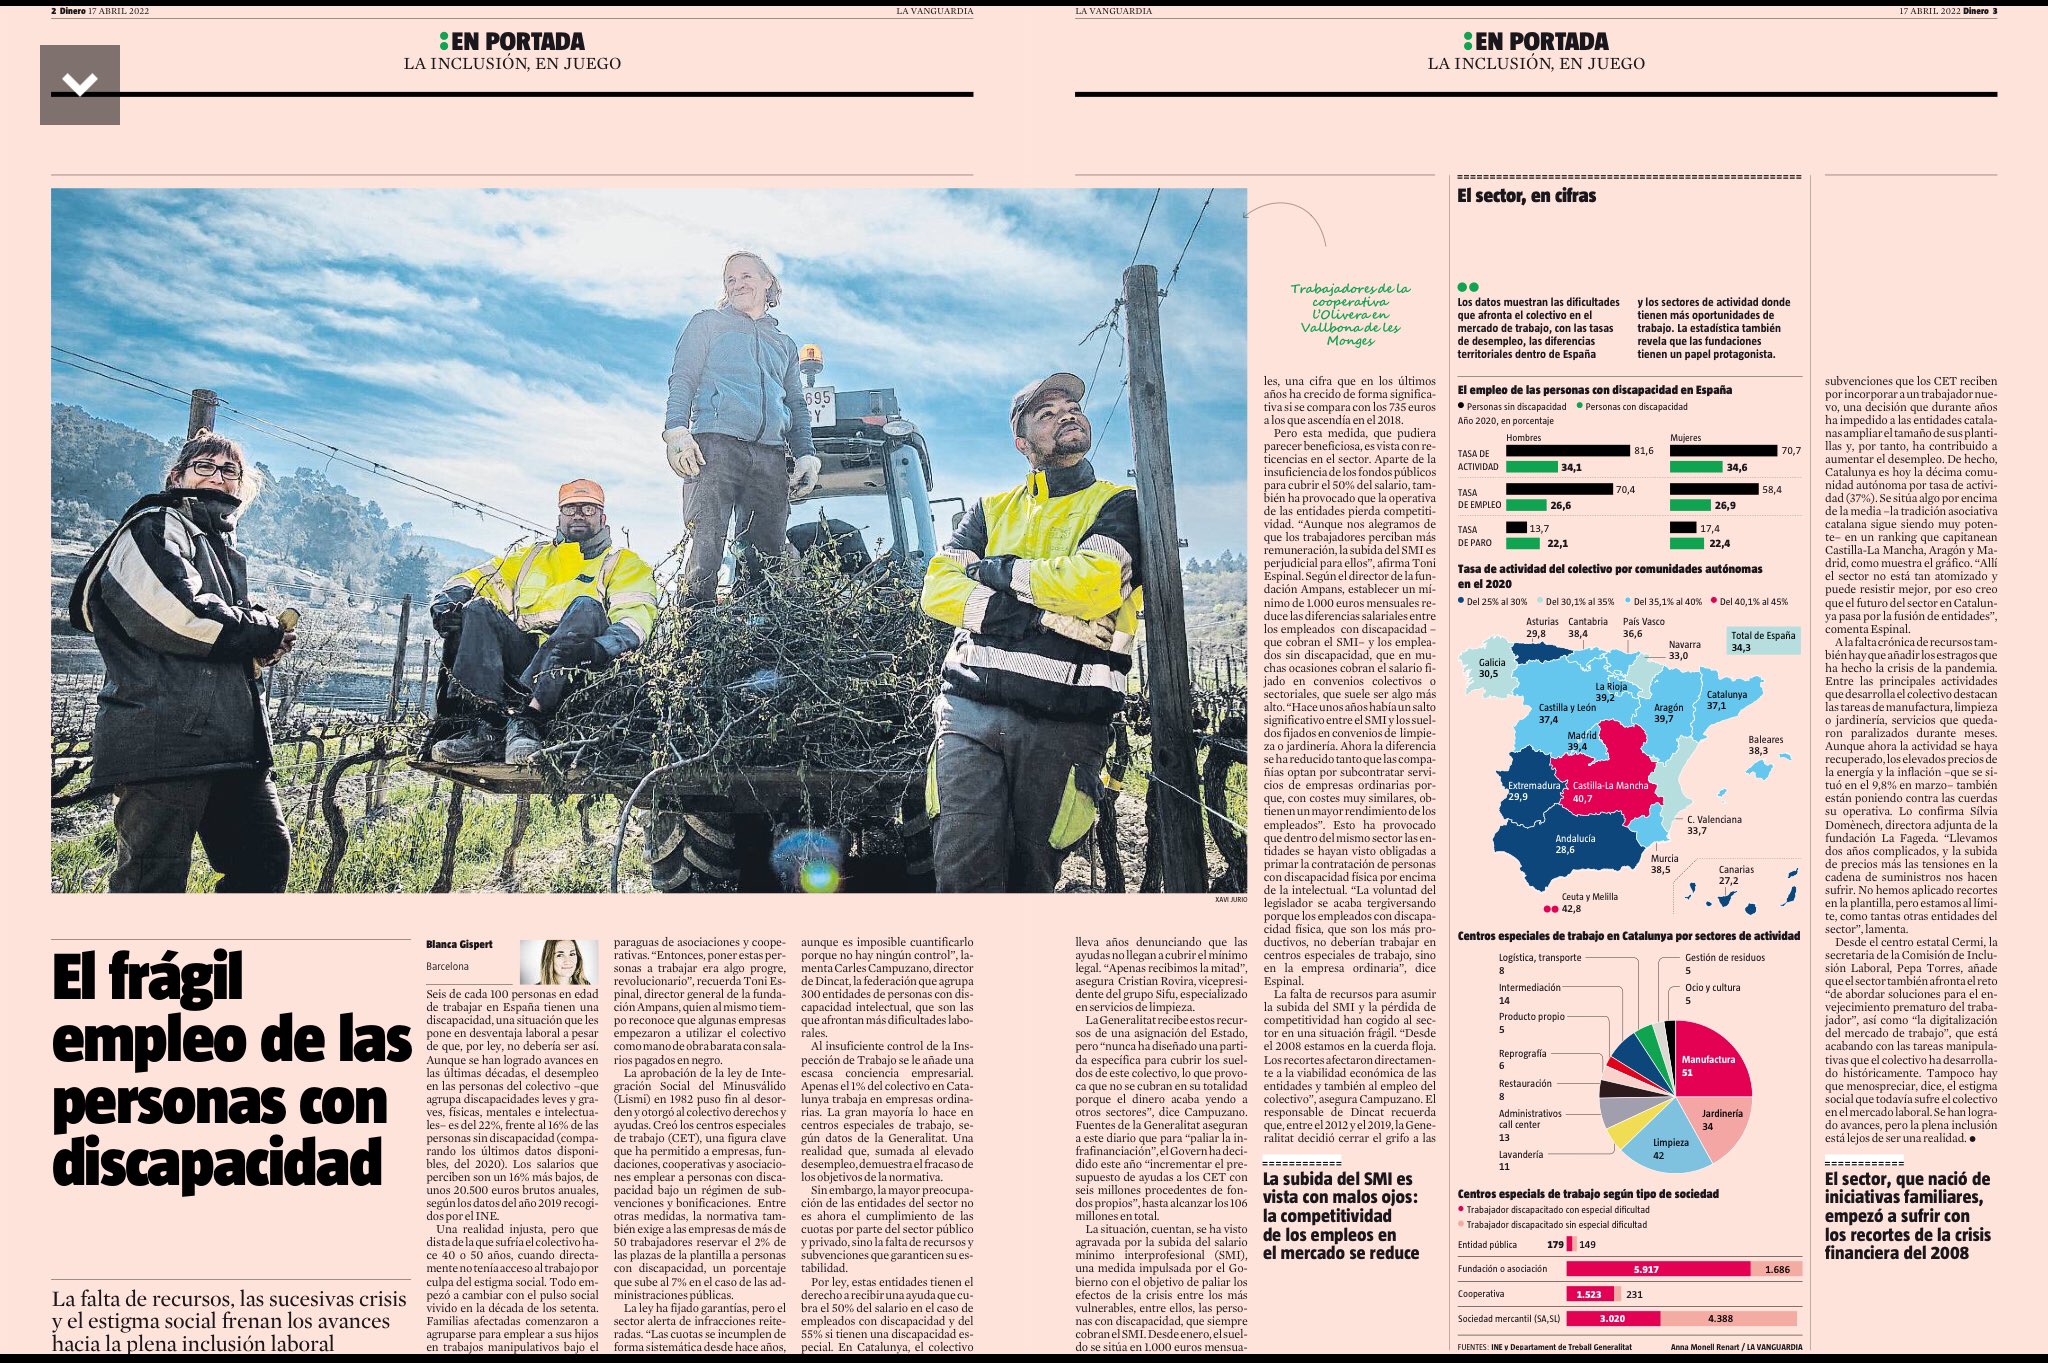 Paginas del periódico de La Vanguardia sobre los frágil empleo de las personas con discapacidad